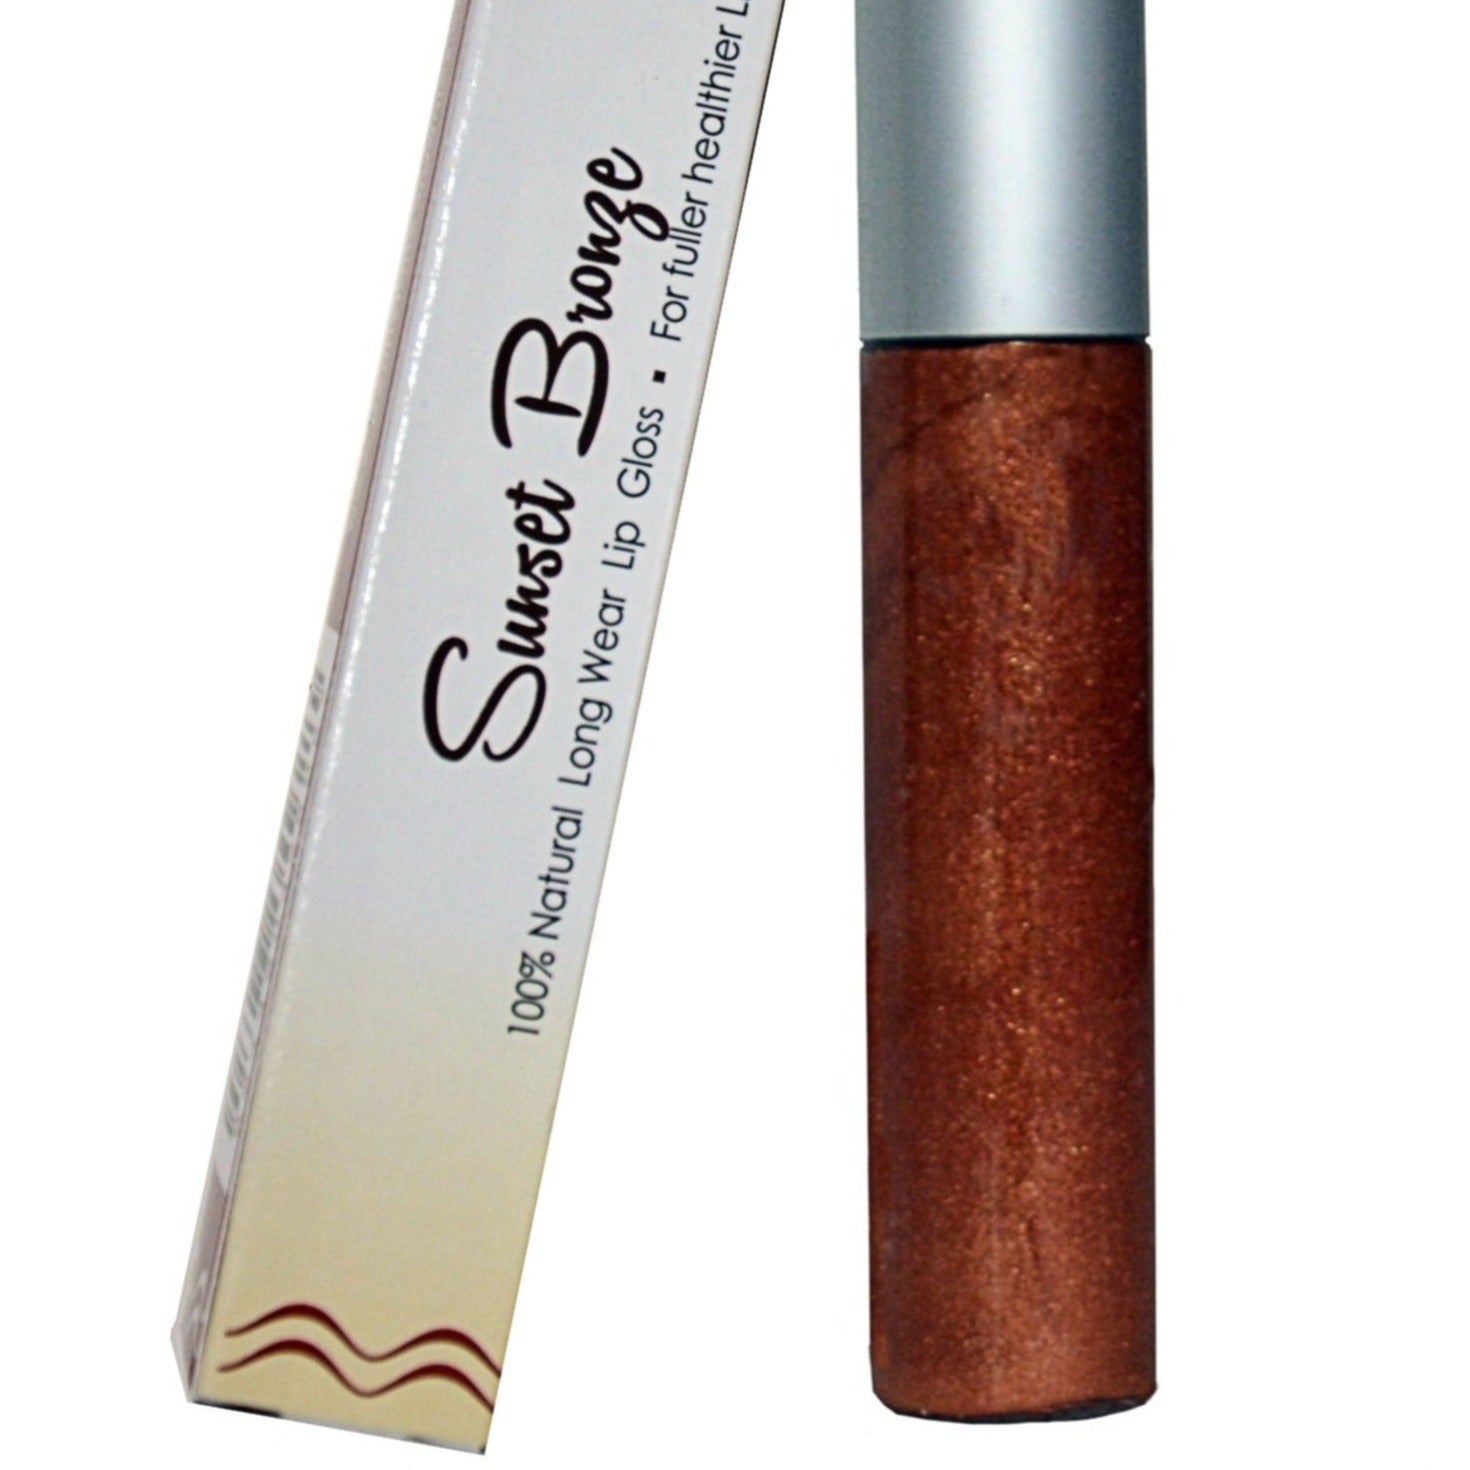 Sunset Bronze - 100% Natural Moisturizing Lip Gloss-Penny Lane Organics